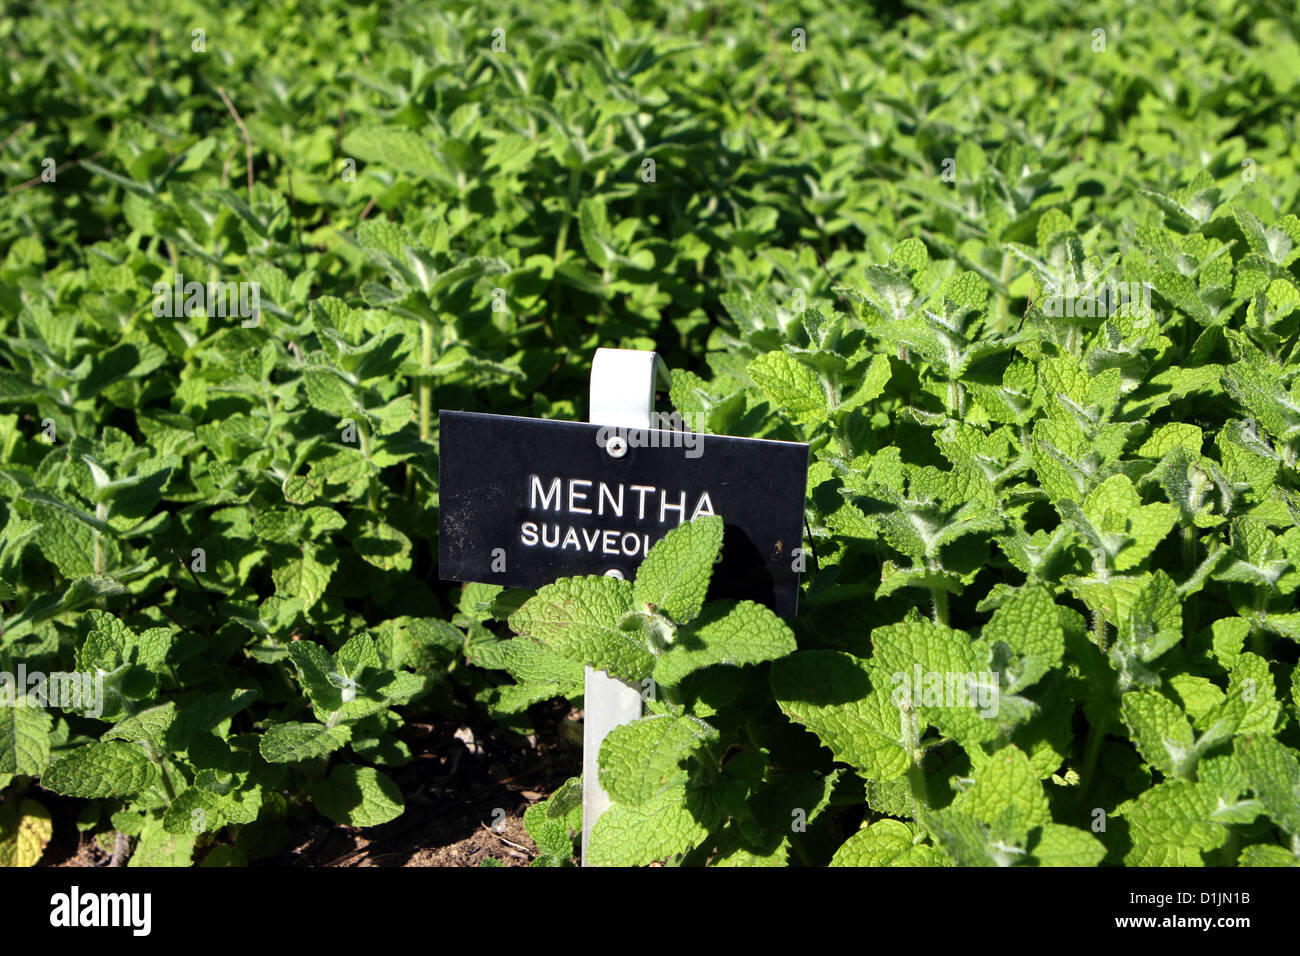 Apple mint in the herb garden Mentha suaveolens sign in herbs bed, growing herbs mint growing in garden Stock Photo